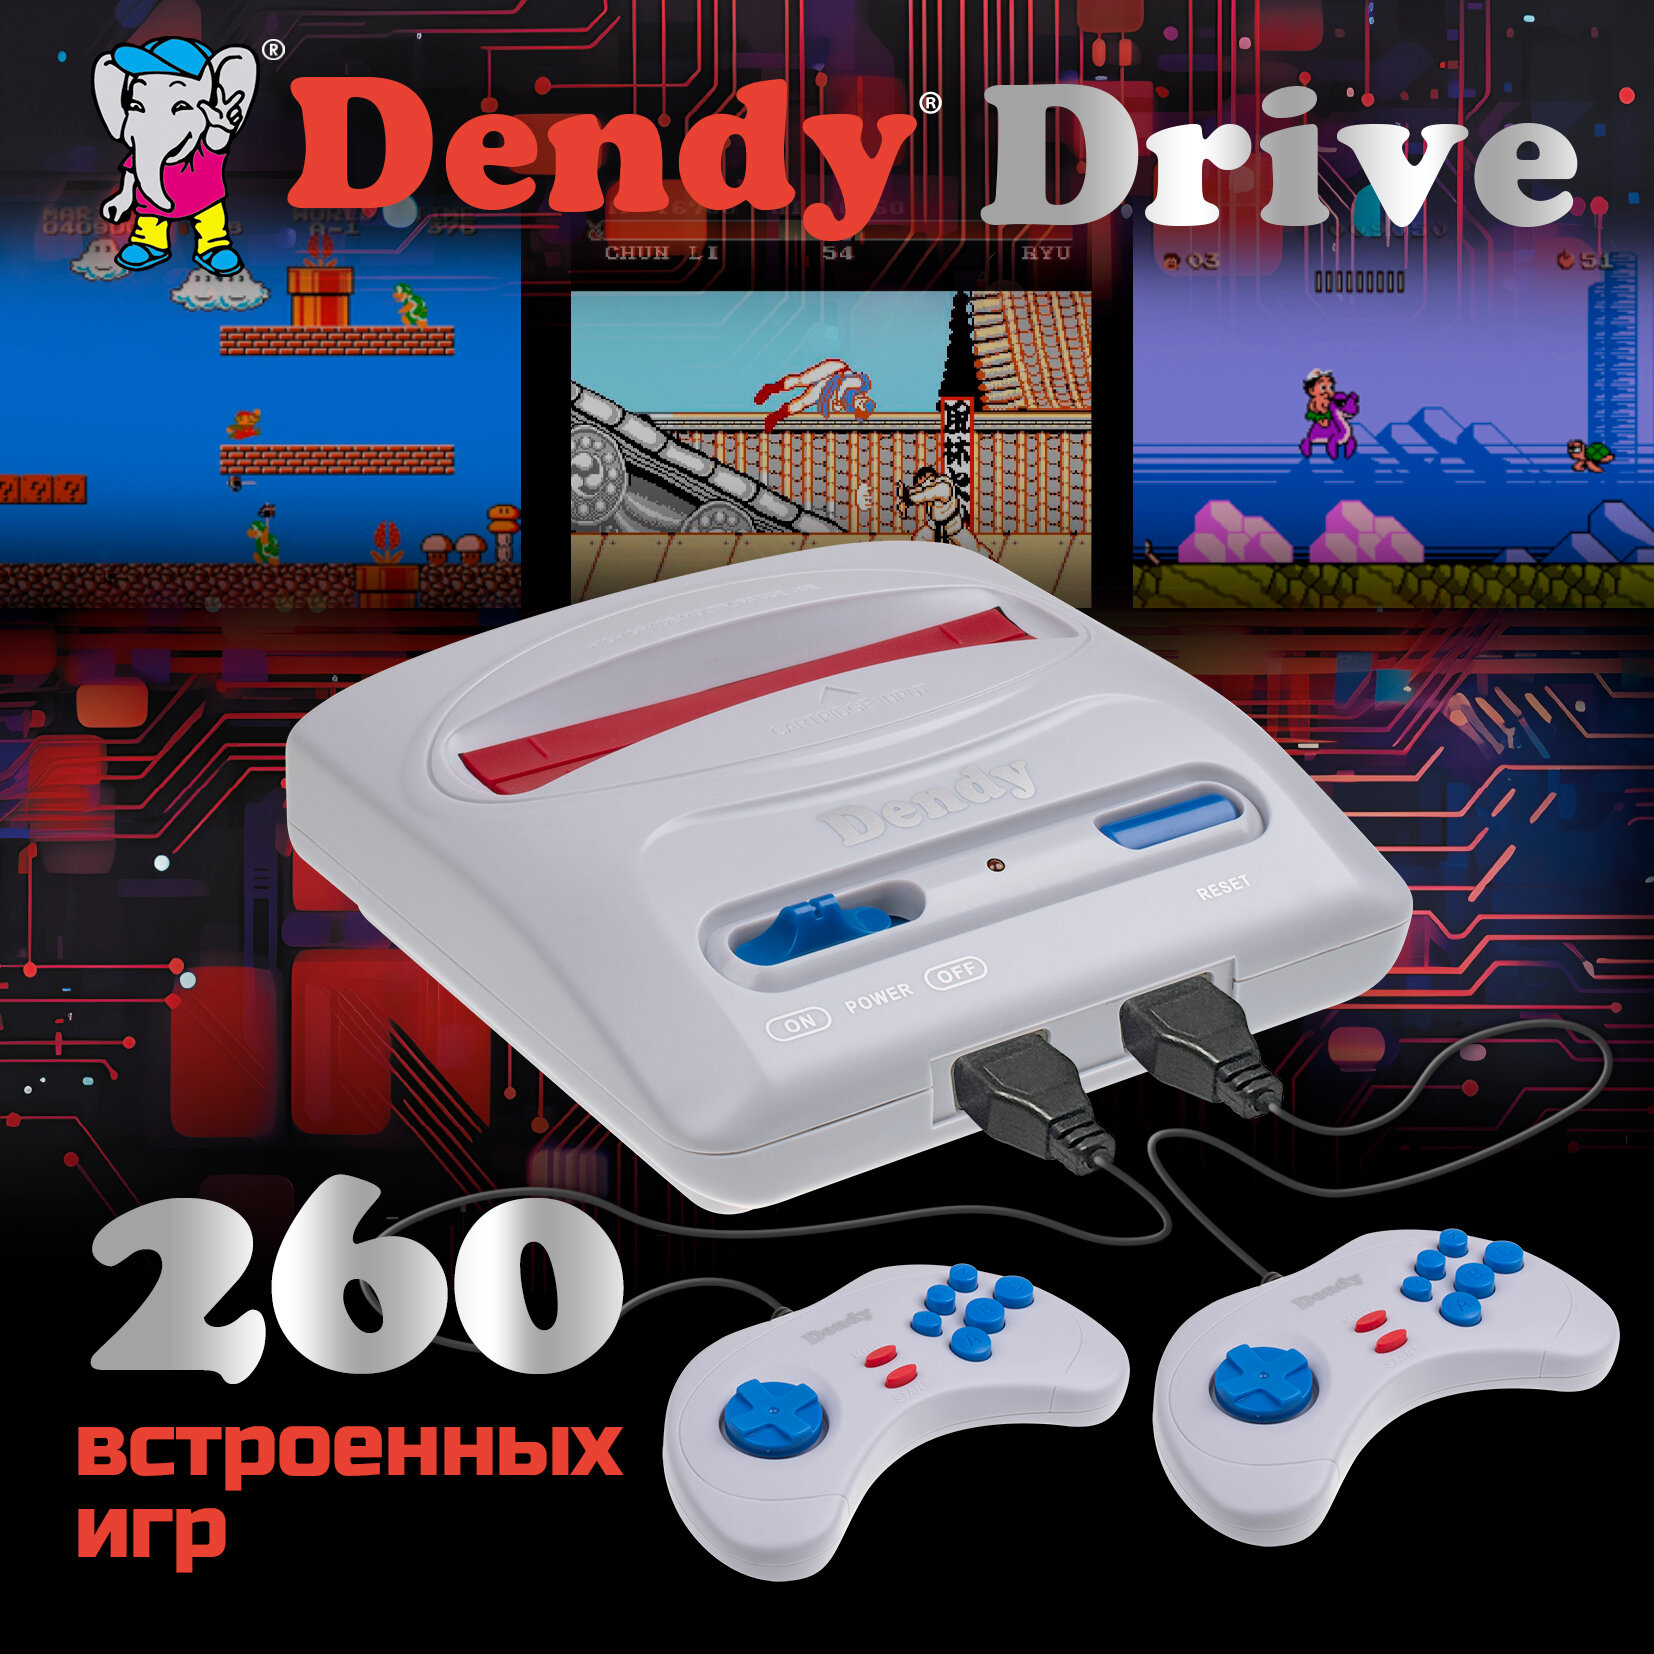 Игровая приставка Dendy Drive 260 встроенных игр (8-бит) / Ретро консоль Денди / Для телевизора